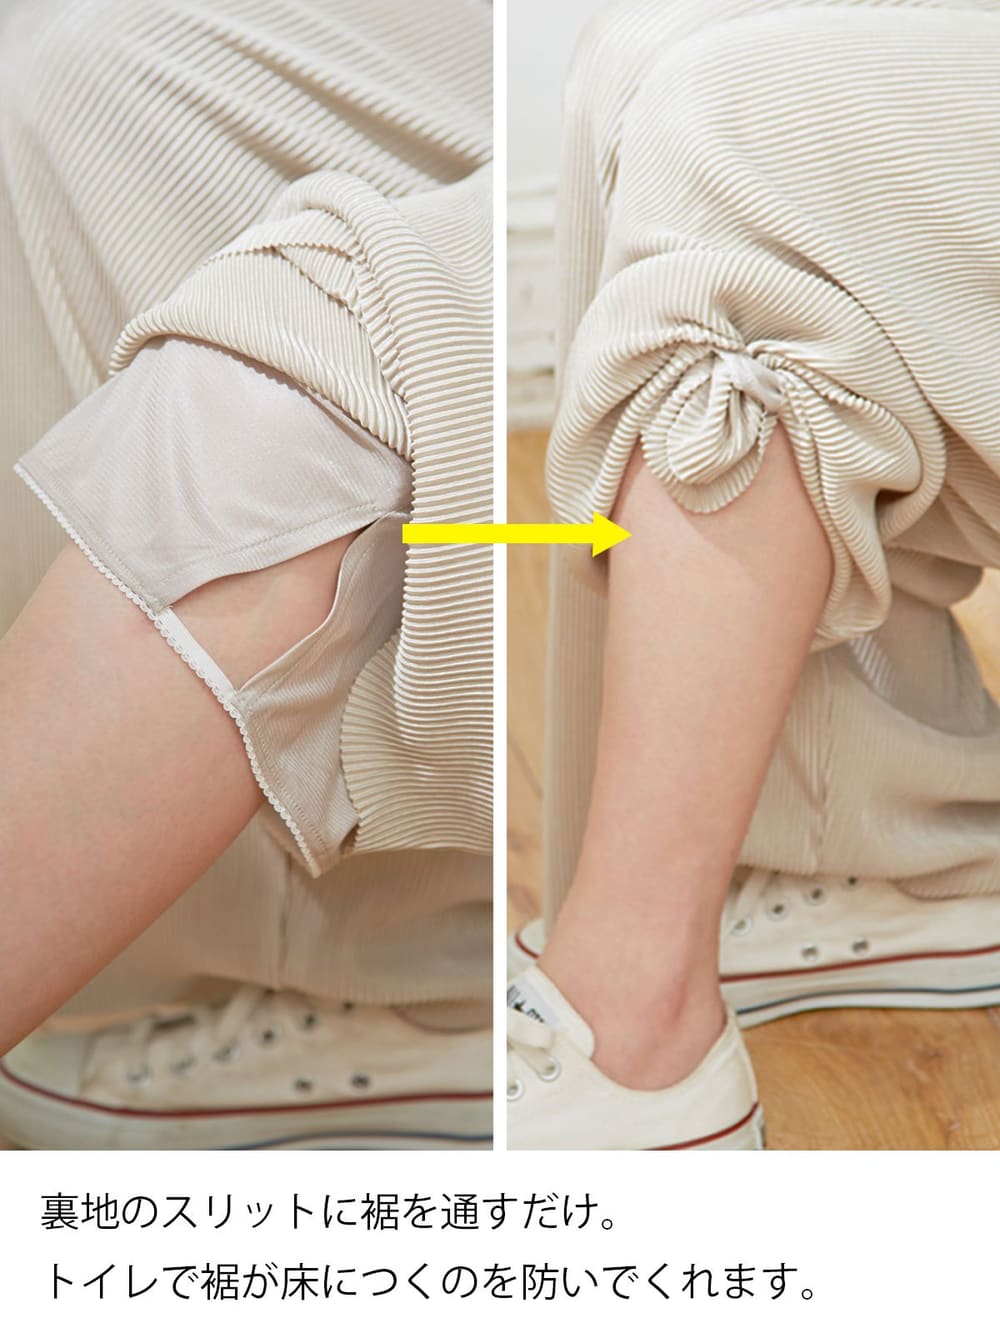 マタニティ パンツ 産前産後対応 裾が床につかない機能付き らくちんサテンプリーツパンツ マタニティウェア 授乳服通販 エンジェリーベ 公式